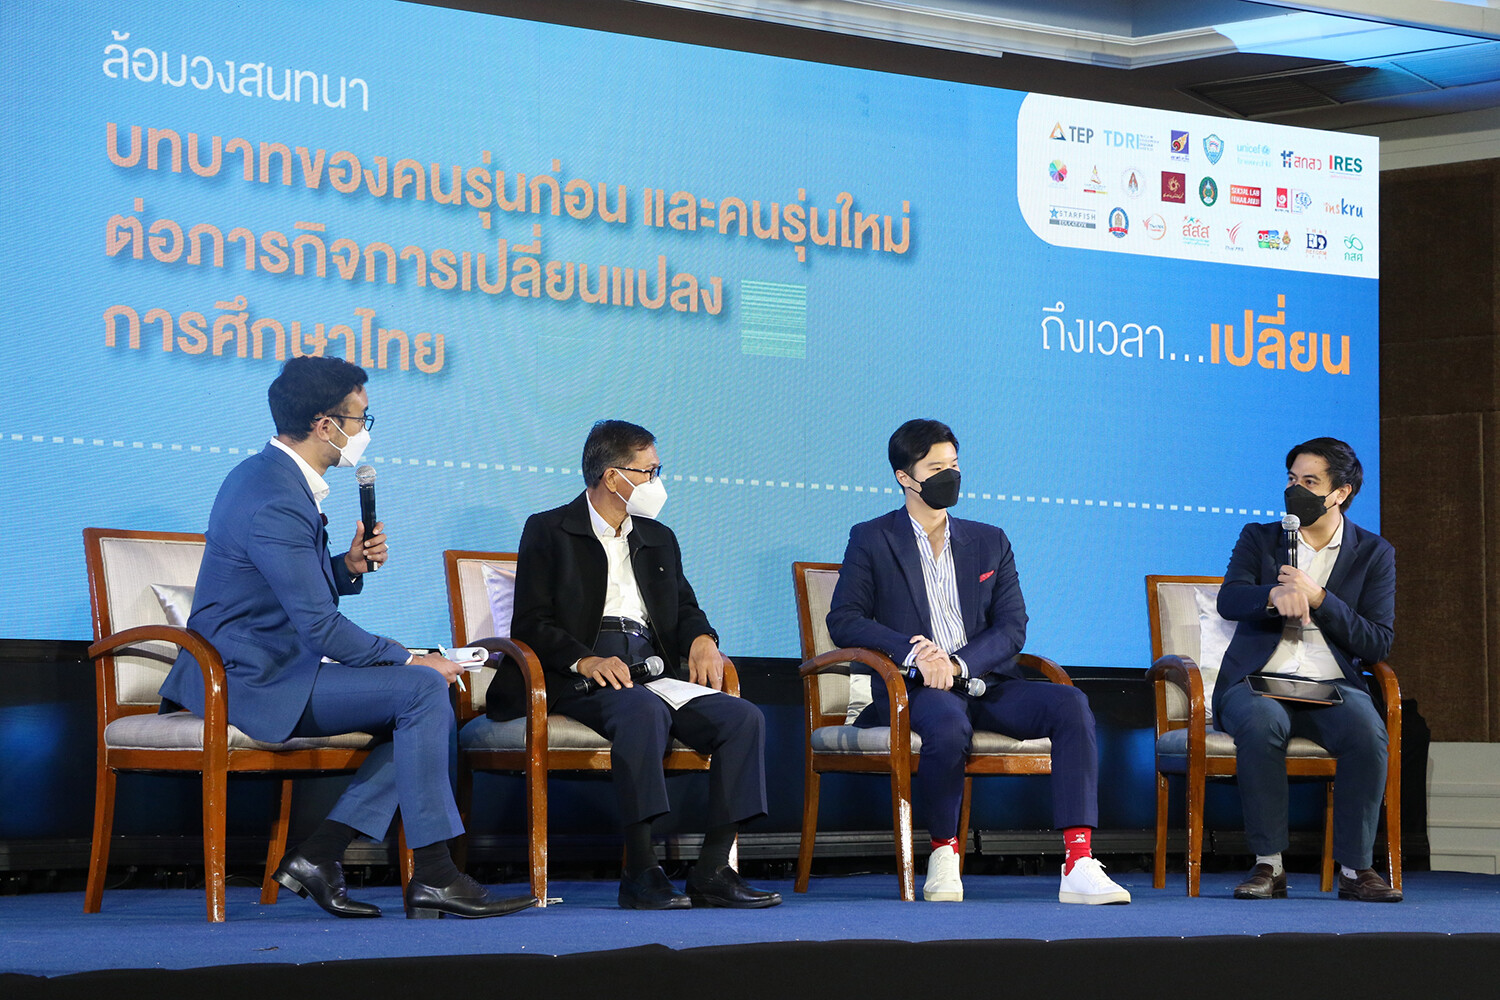 เปิดเวที "ก่อร่างสร้างใหม่ การศึกษาไทยสู่อนาคต" ระดมกูรู 2 วัยร่วมถก"บทบาทของคนรุ่นก่อนและรุ่นใหม่ ต่อภารกิจการเปลี่ยนแปลงการศึกษาไทย"